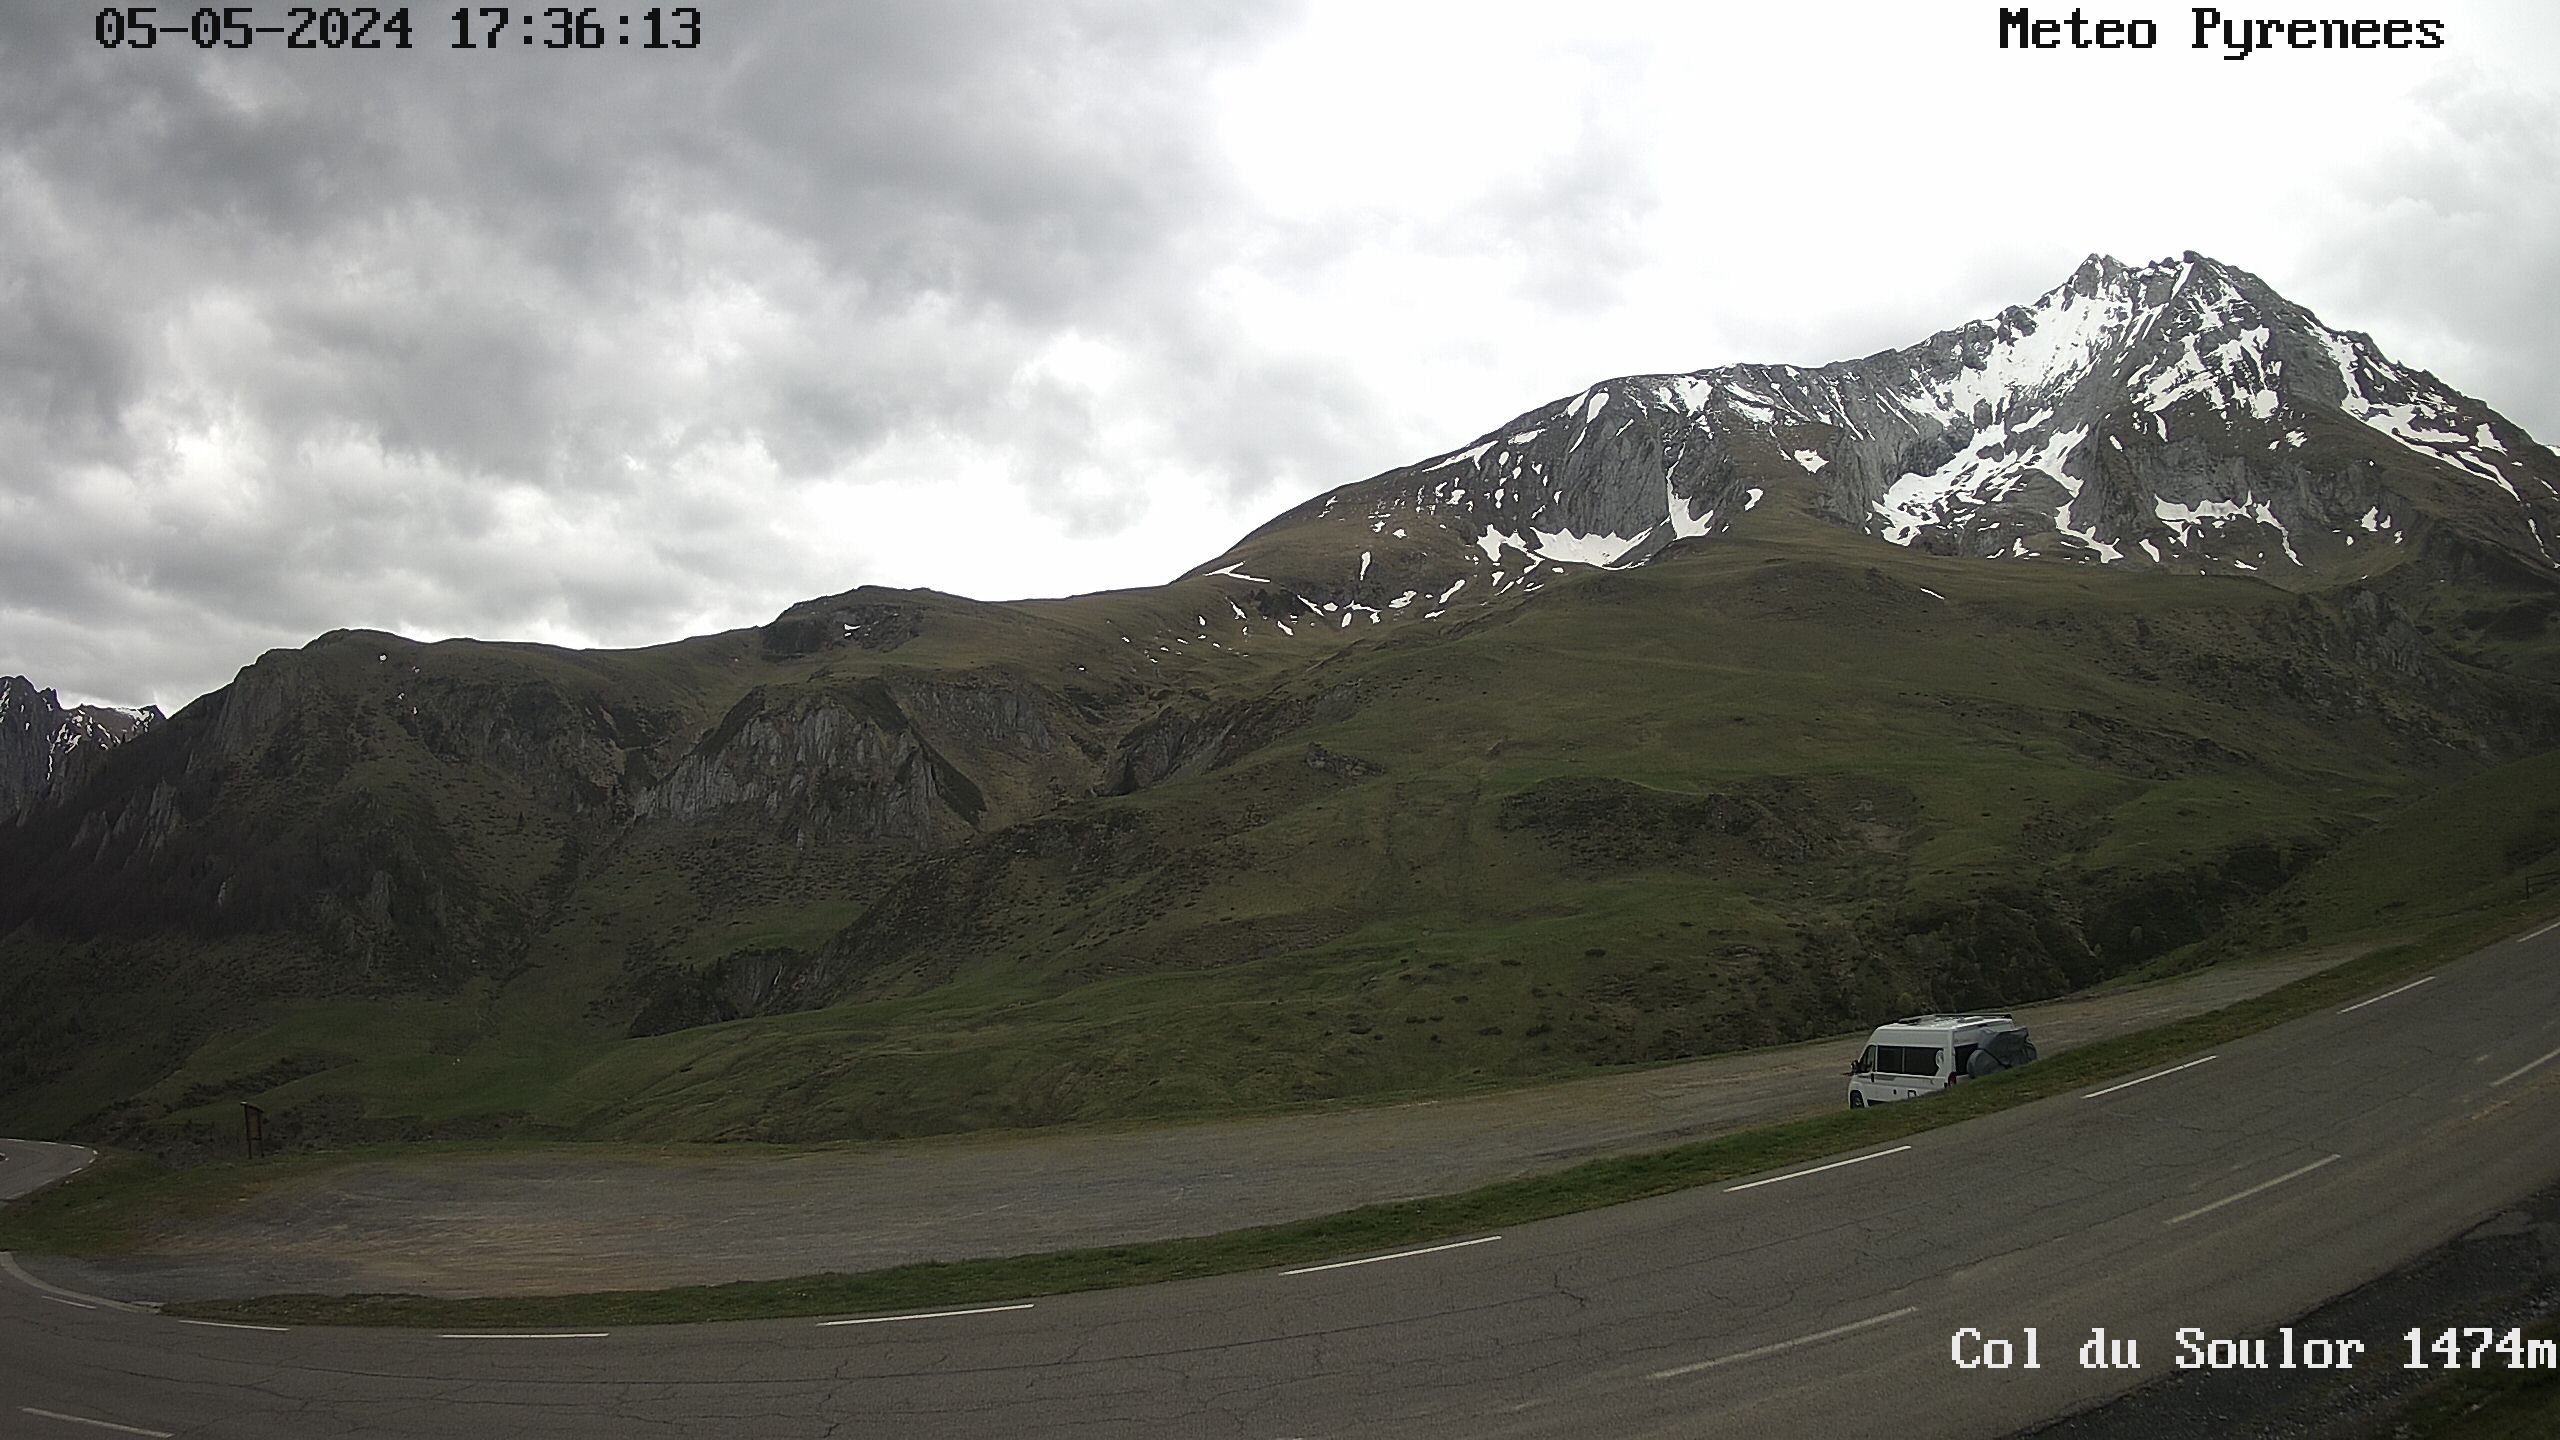 Webcam située au niveau du col de Soulor dans les Hautes Pyrénées